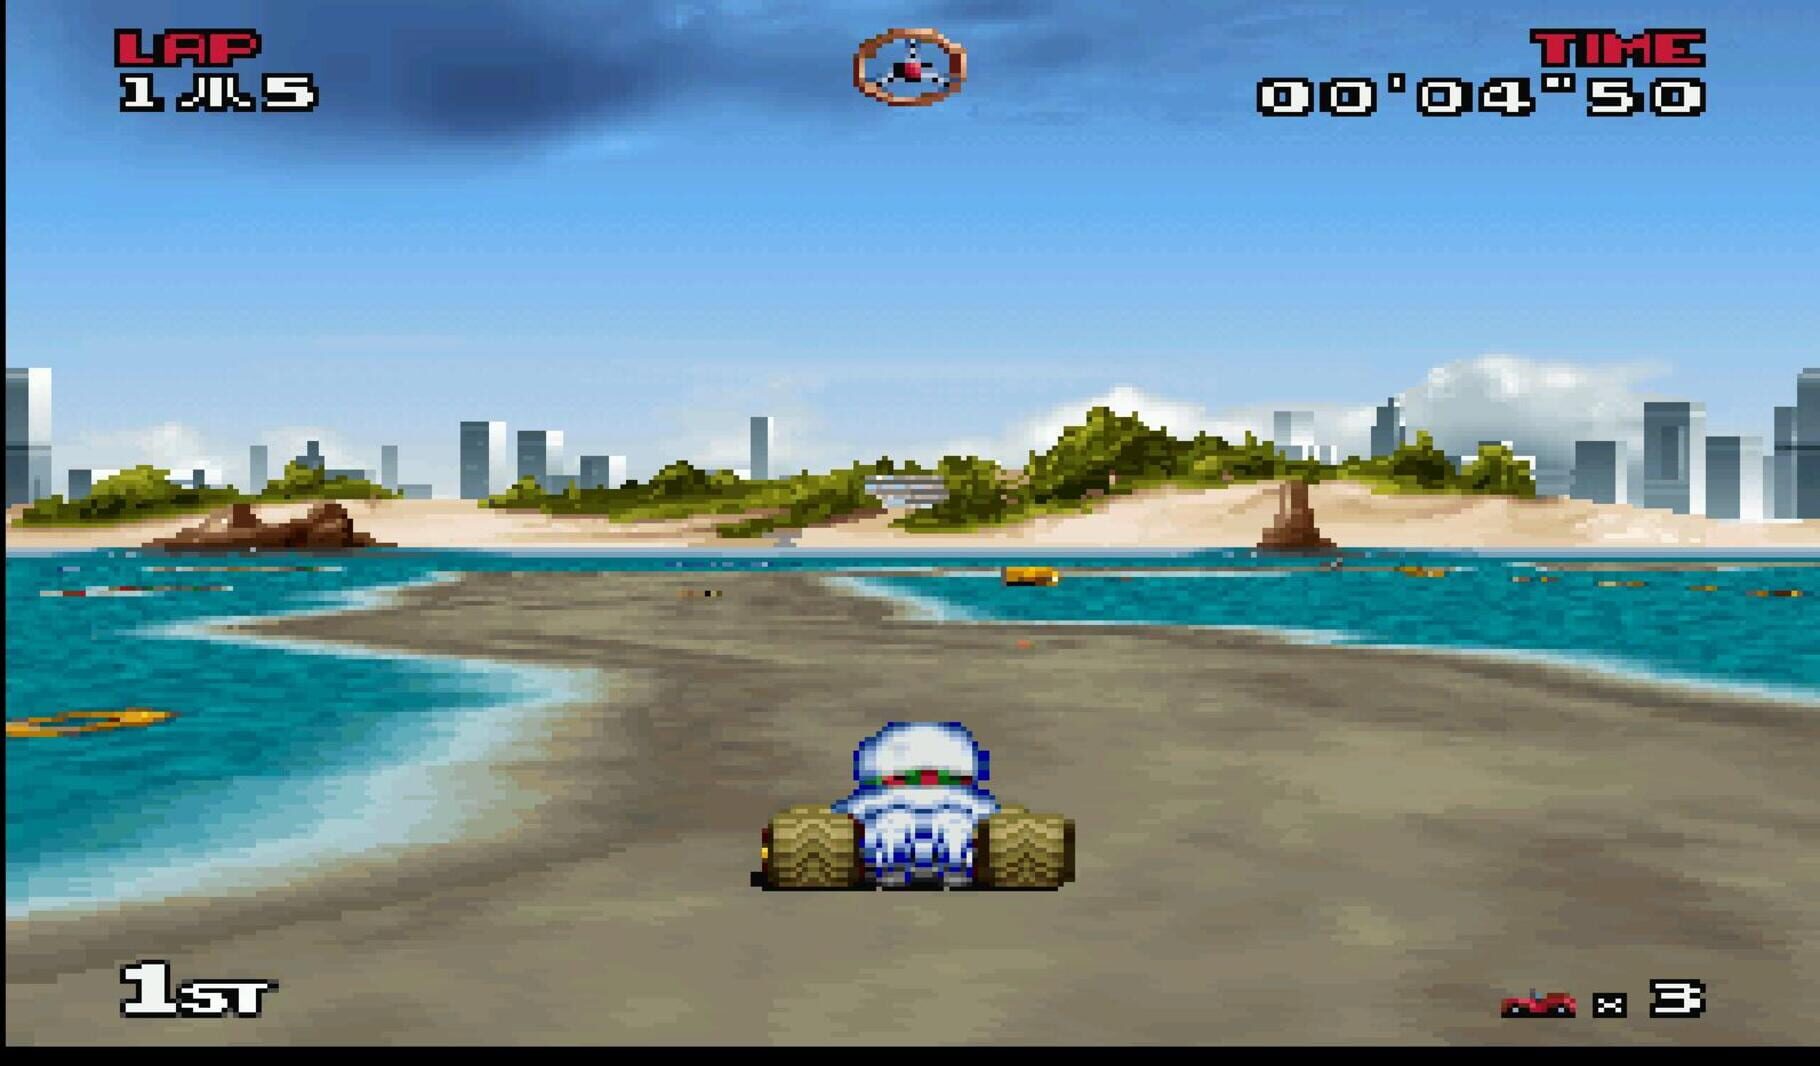 Captura de pantalla - Atari Karts